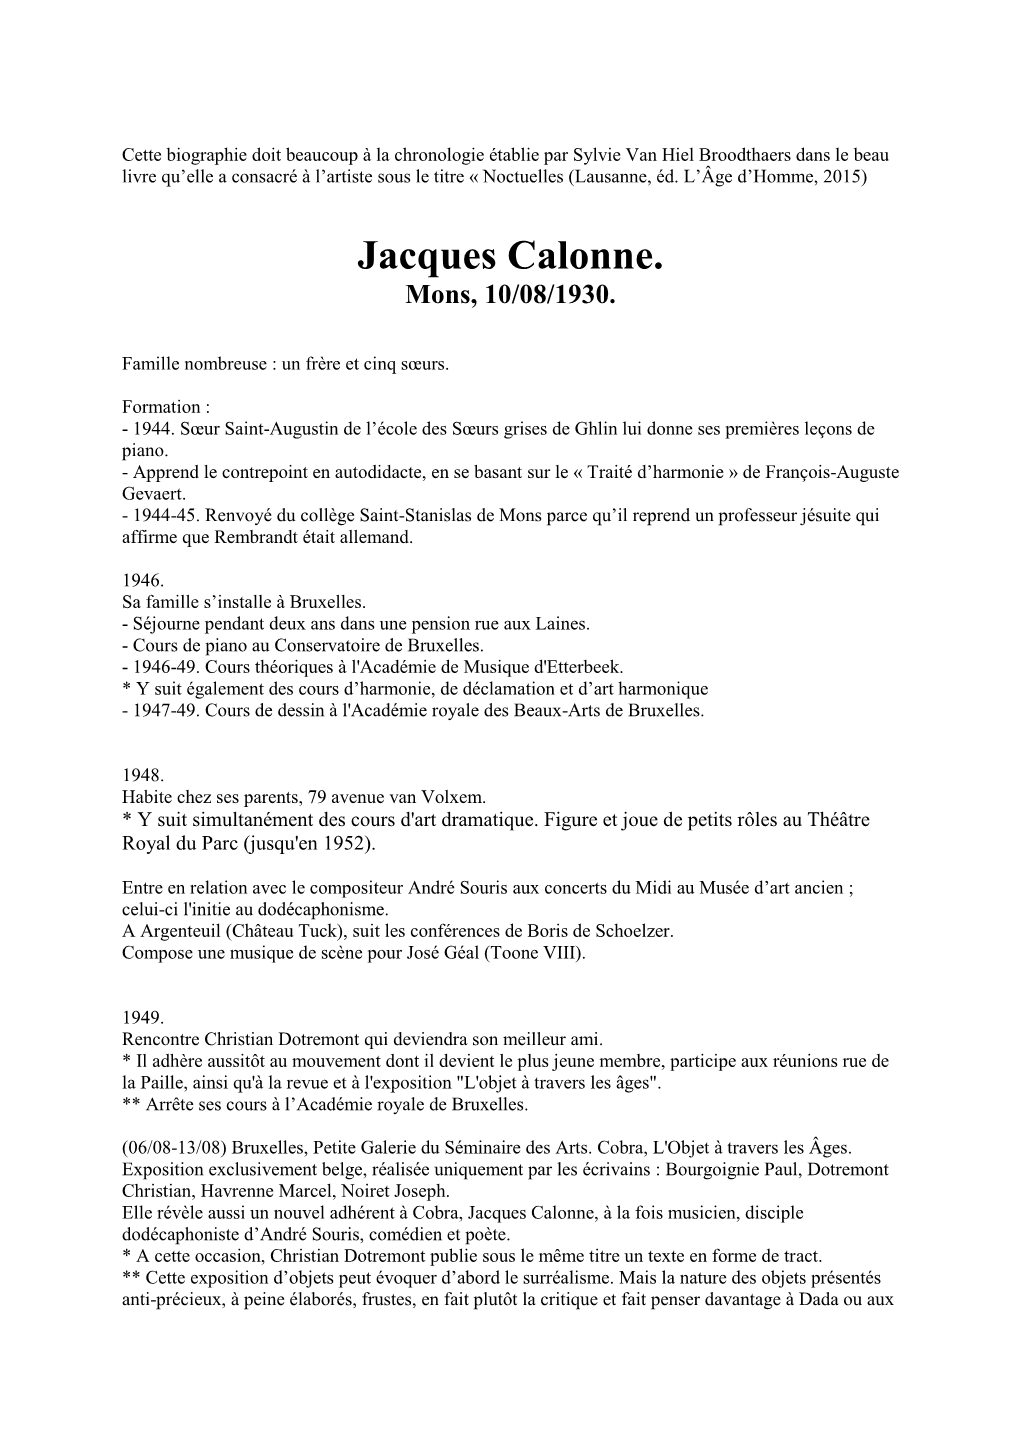 Jacques Calonne. Mons, 10/08/1930